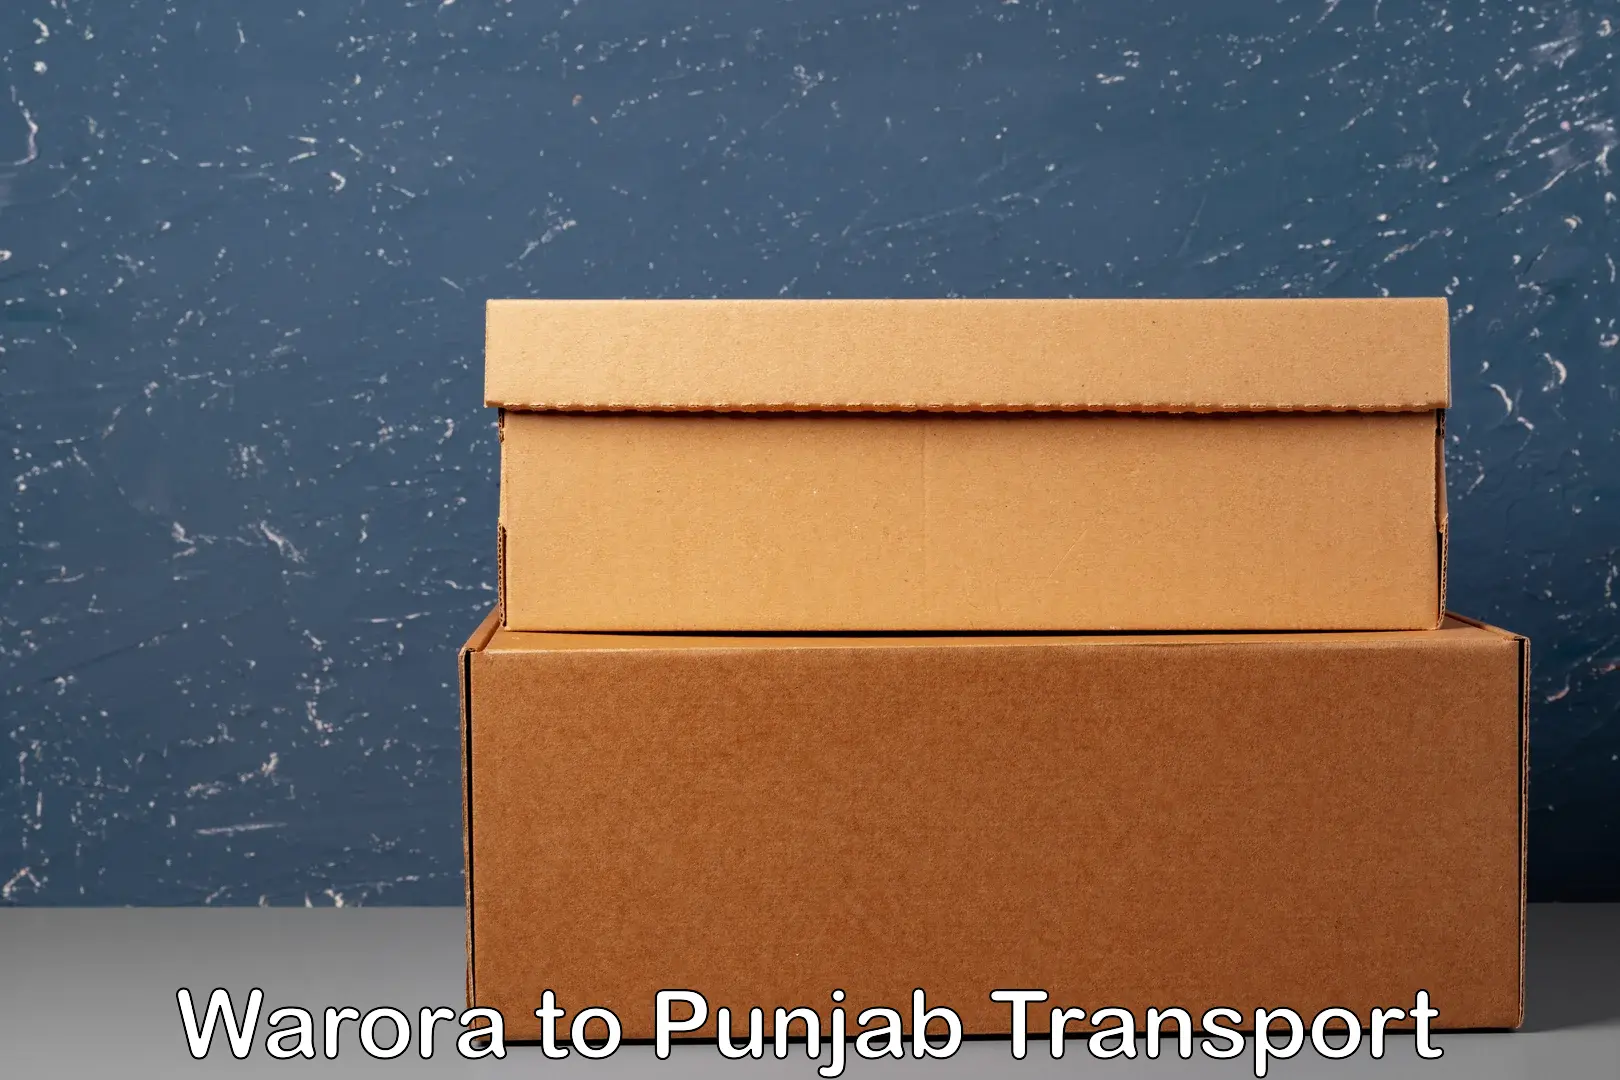 Luggage transport services Warora to Punjab